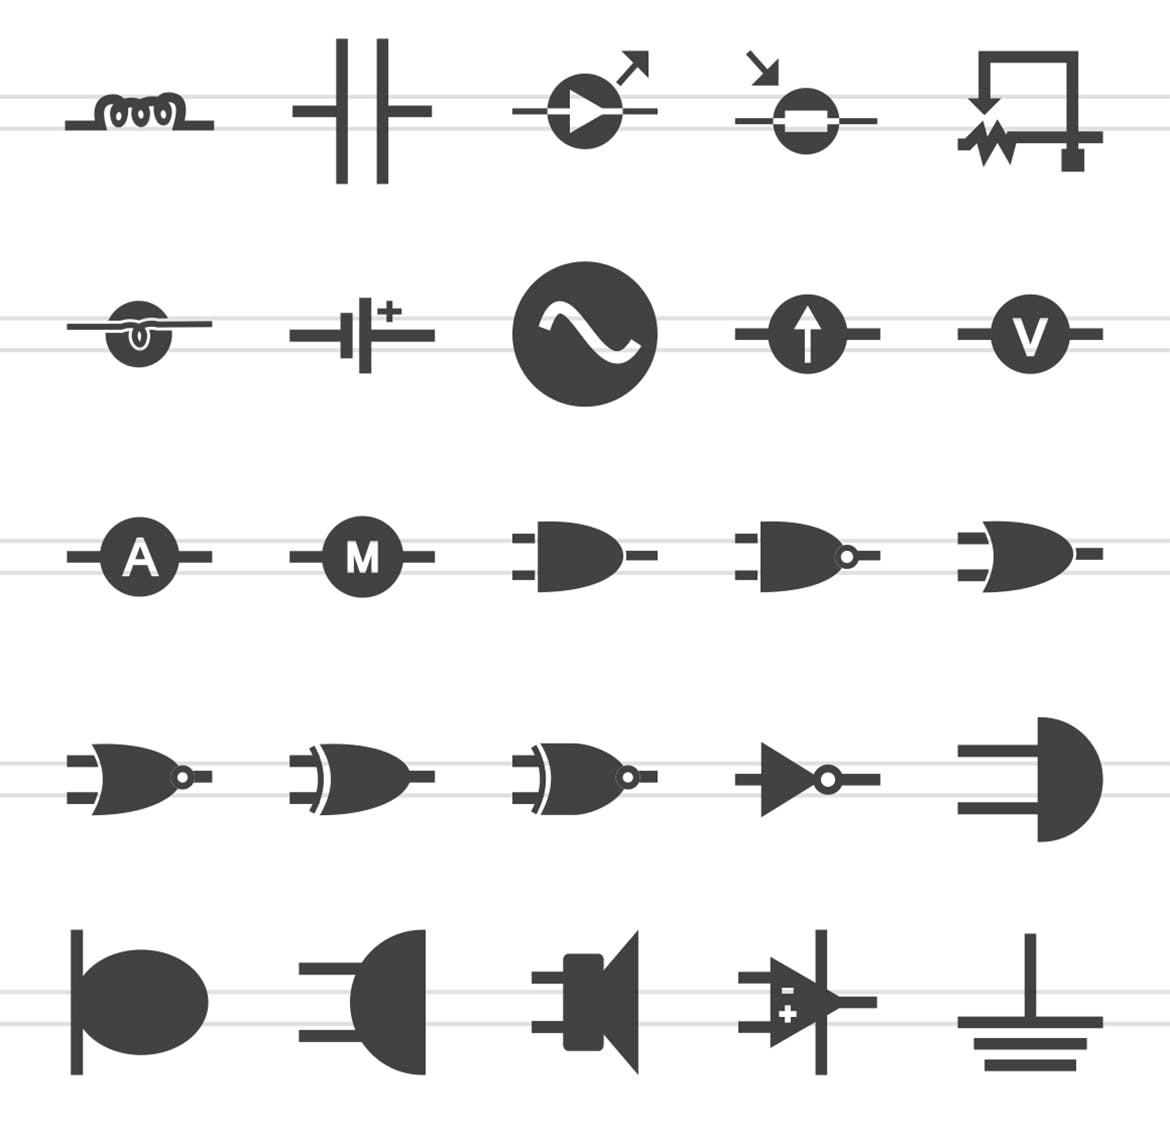 50枚电路线路板主题黑色字体16设计素材网精选图标 50 Electric Circuits Glyph Icons插图(2)